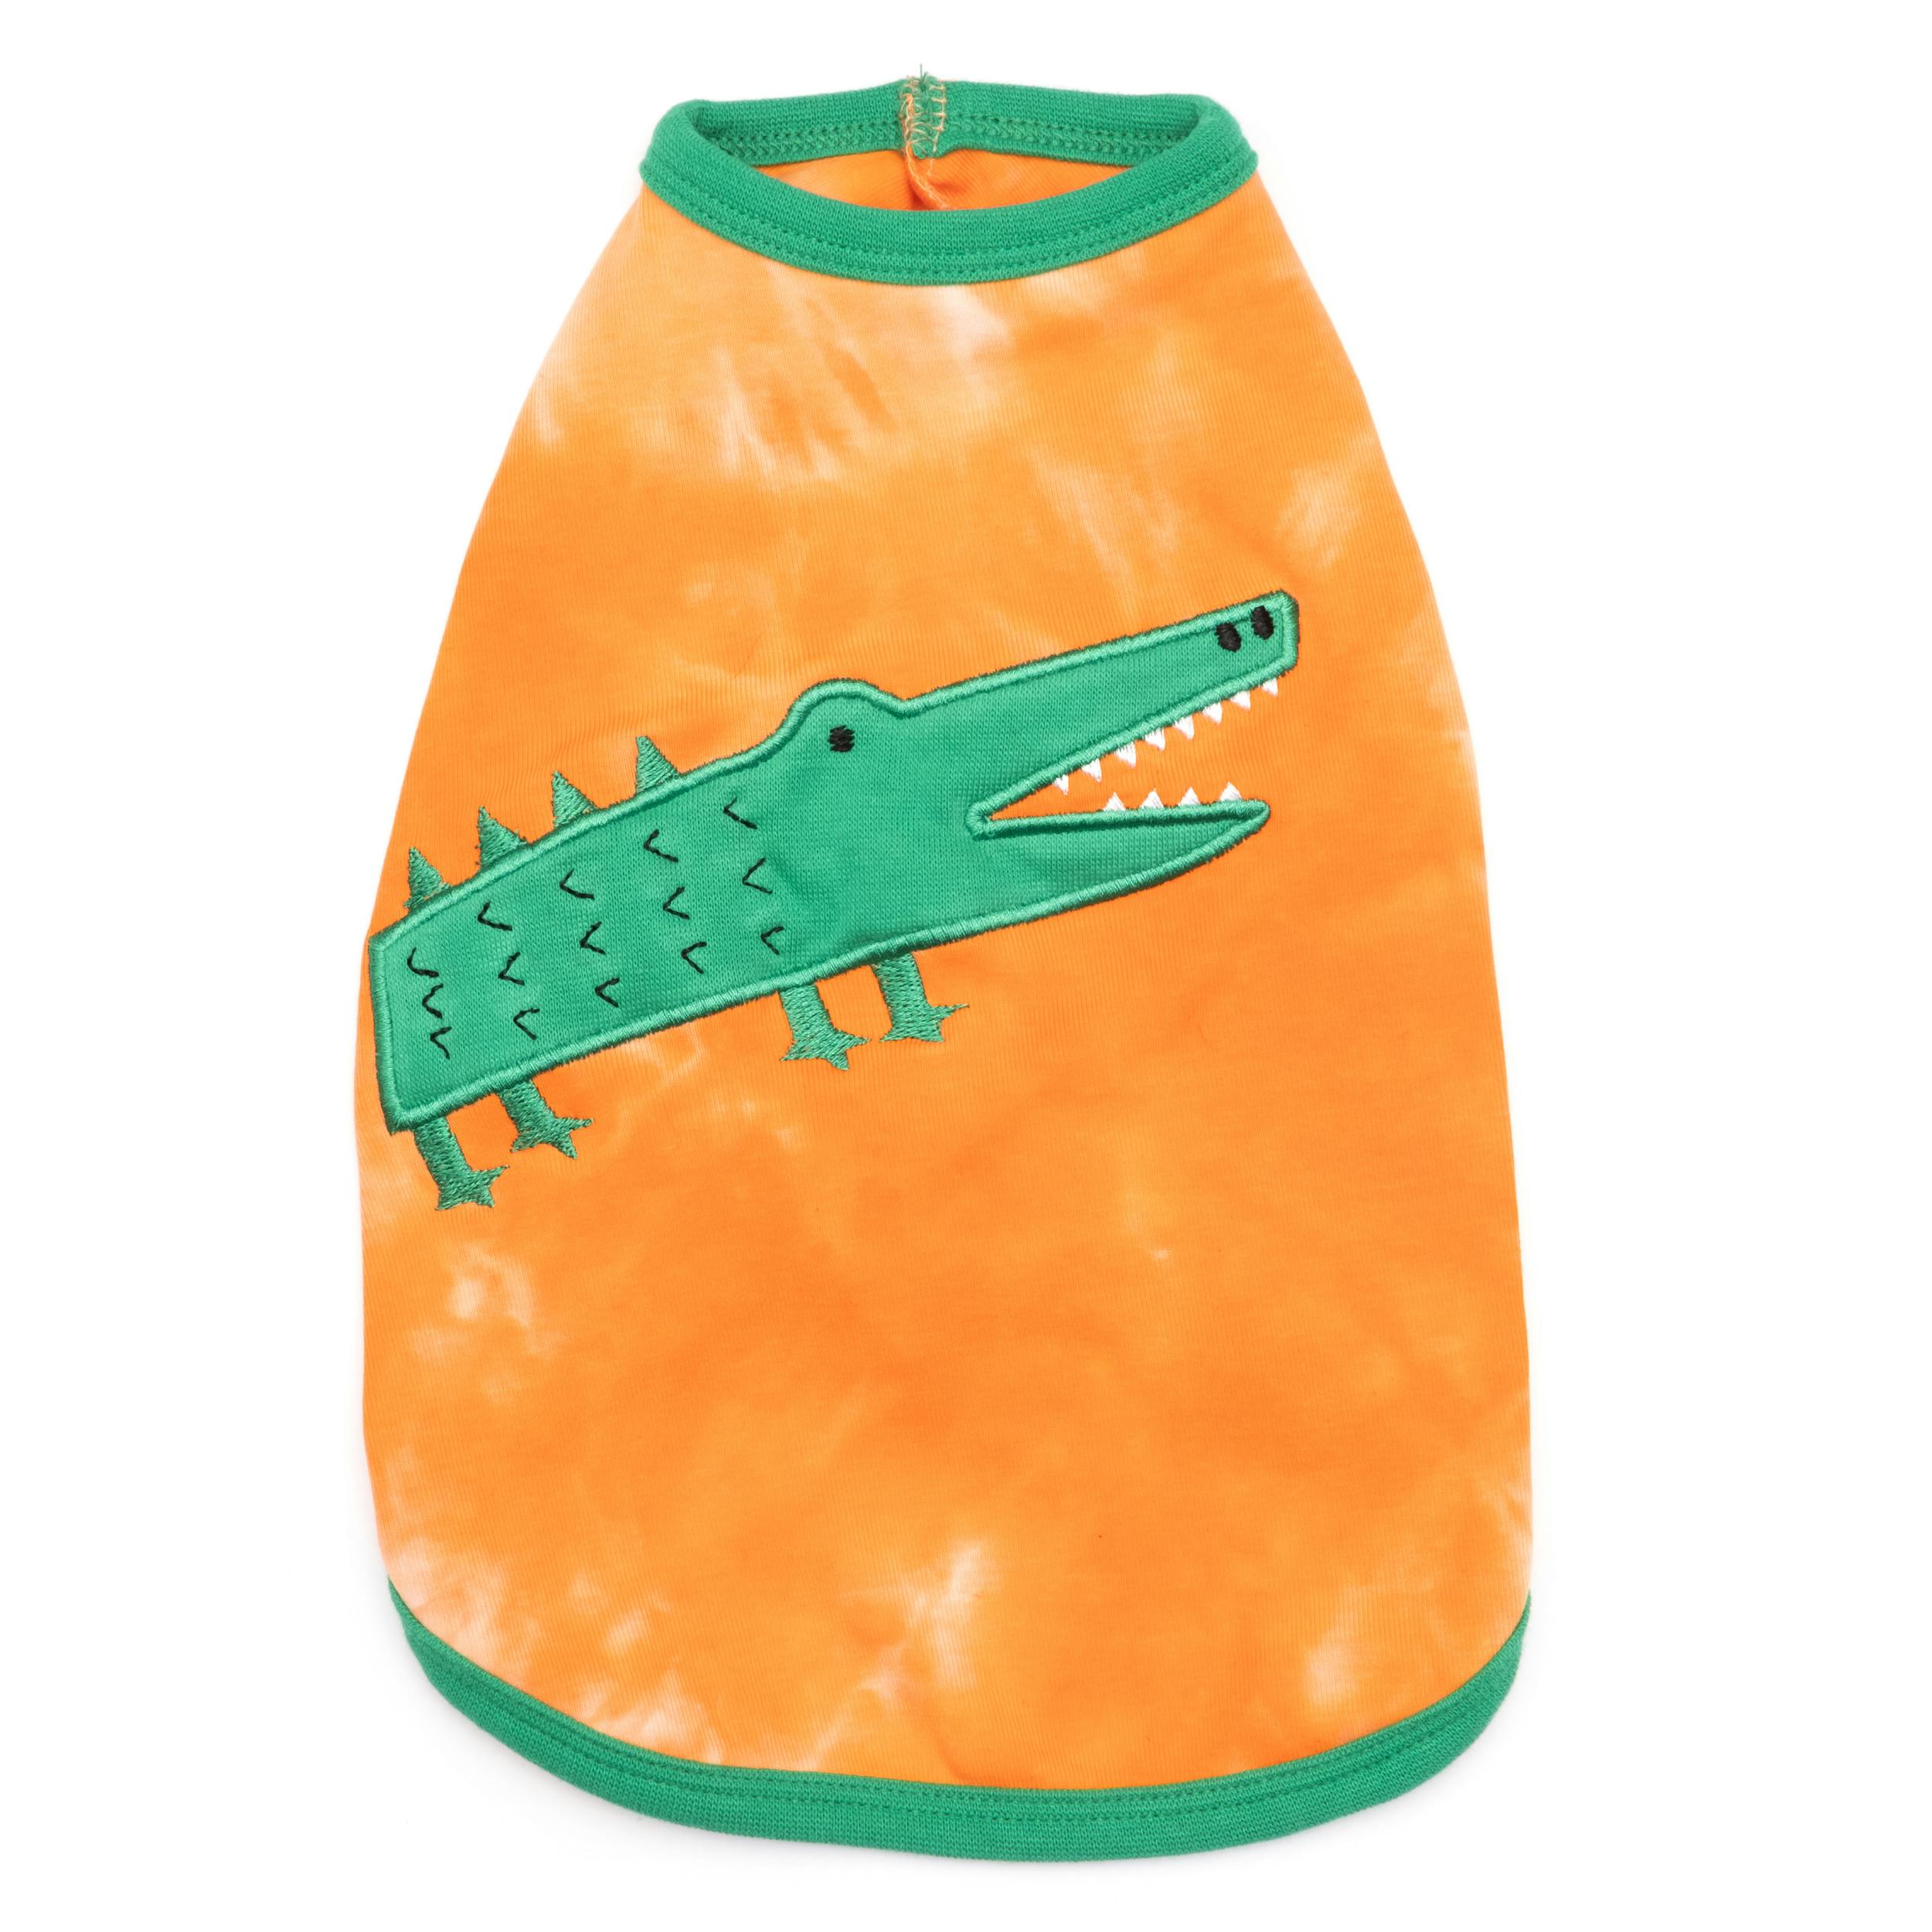 Alligator Tee - Image 1